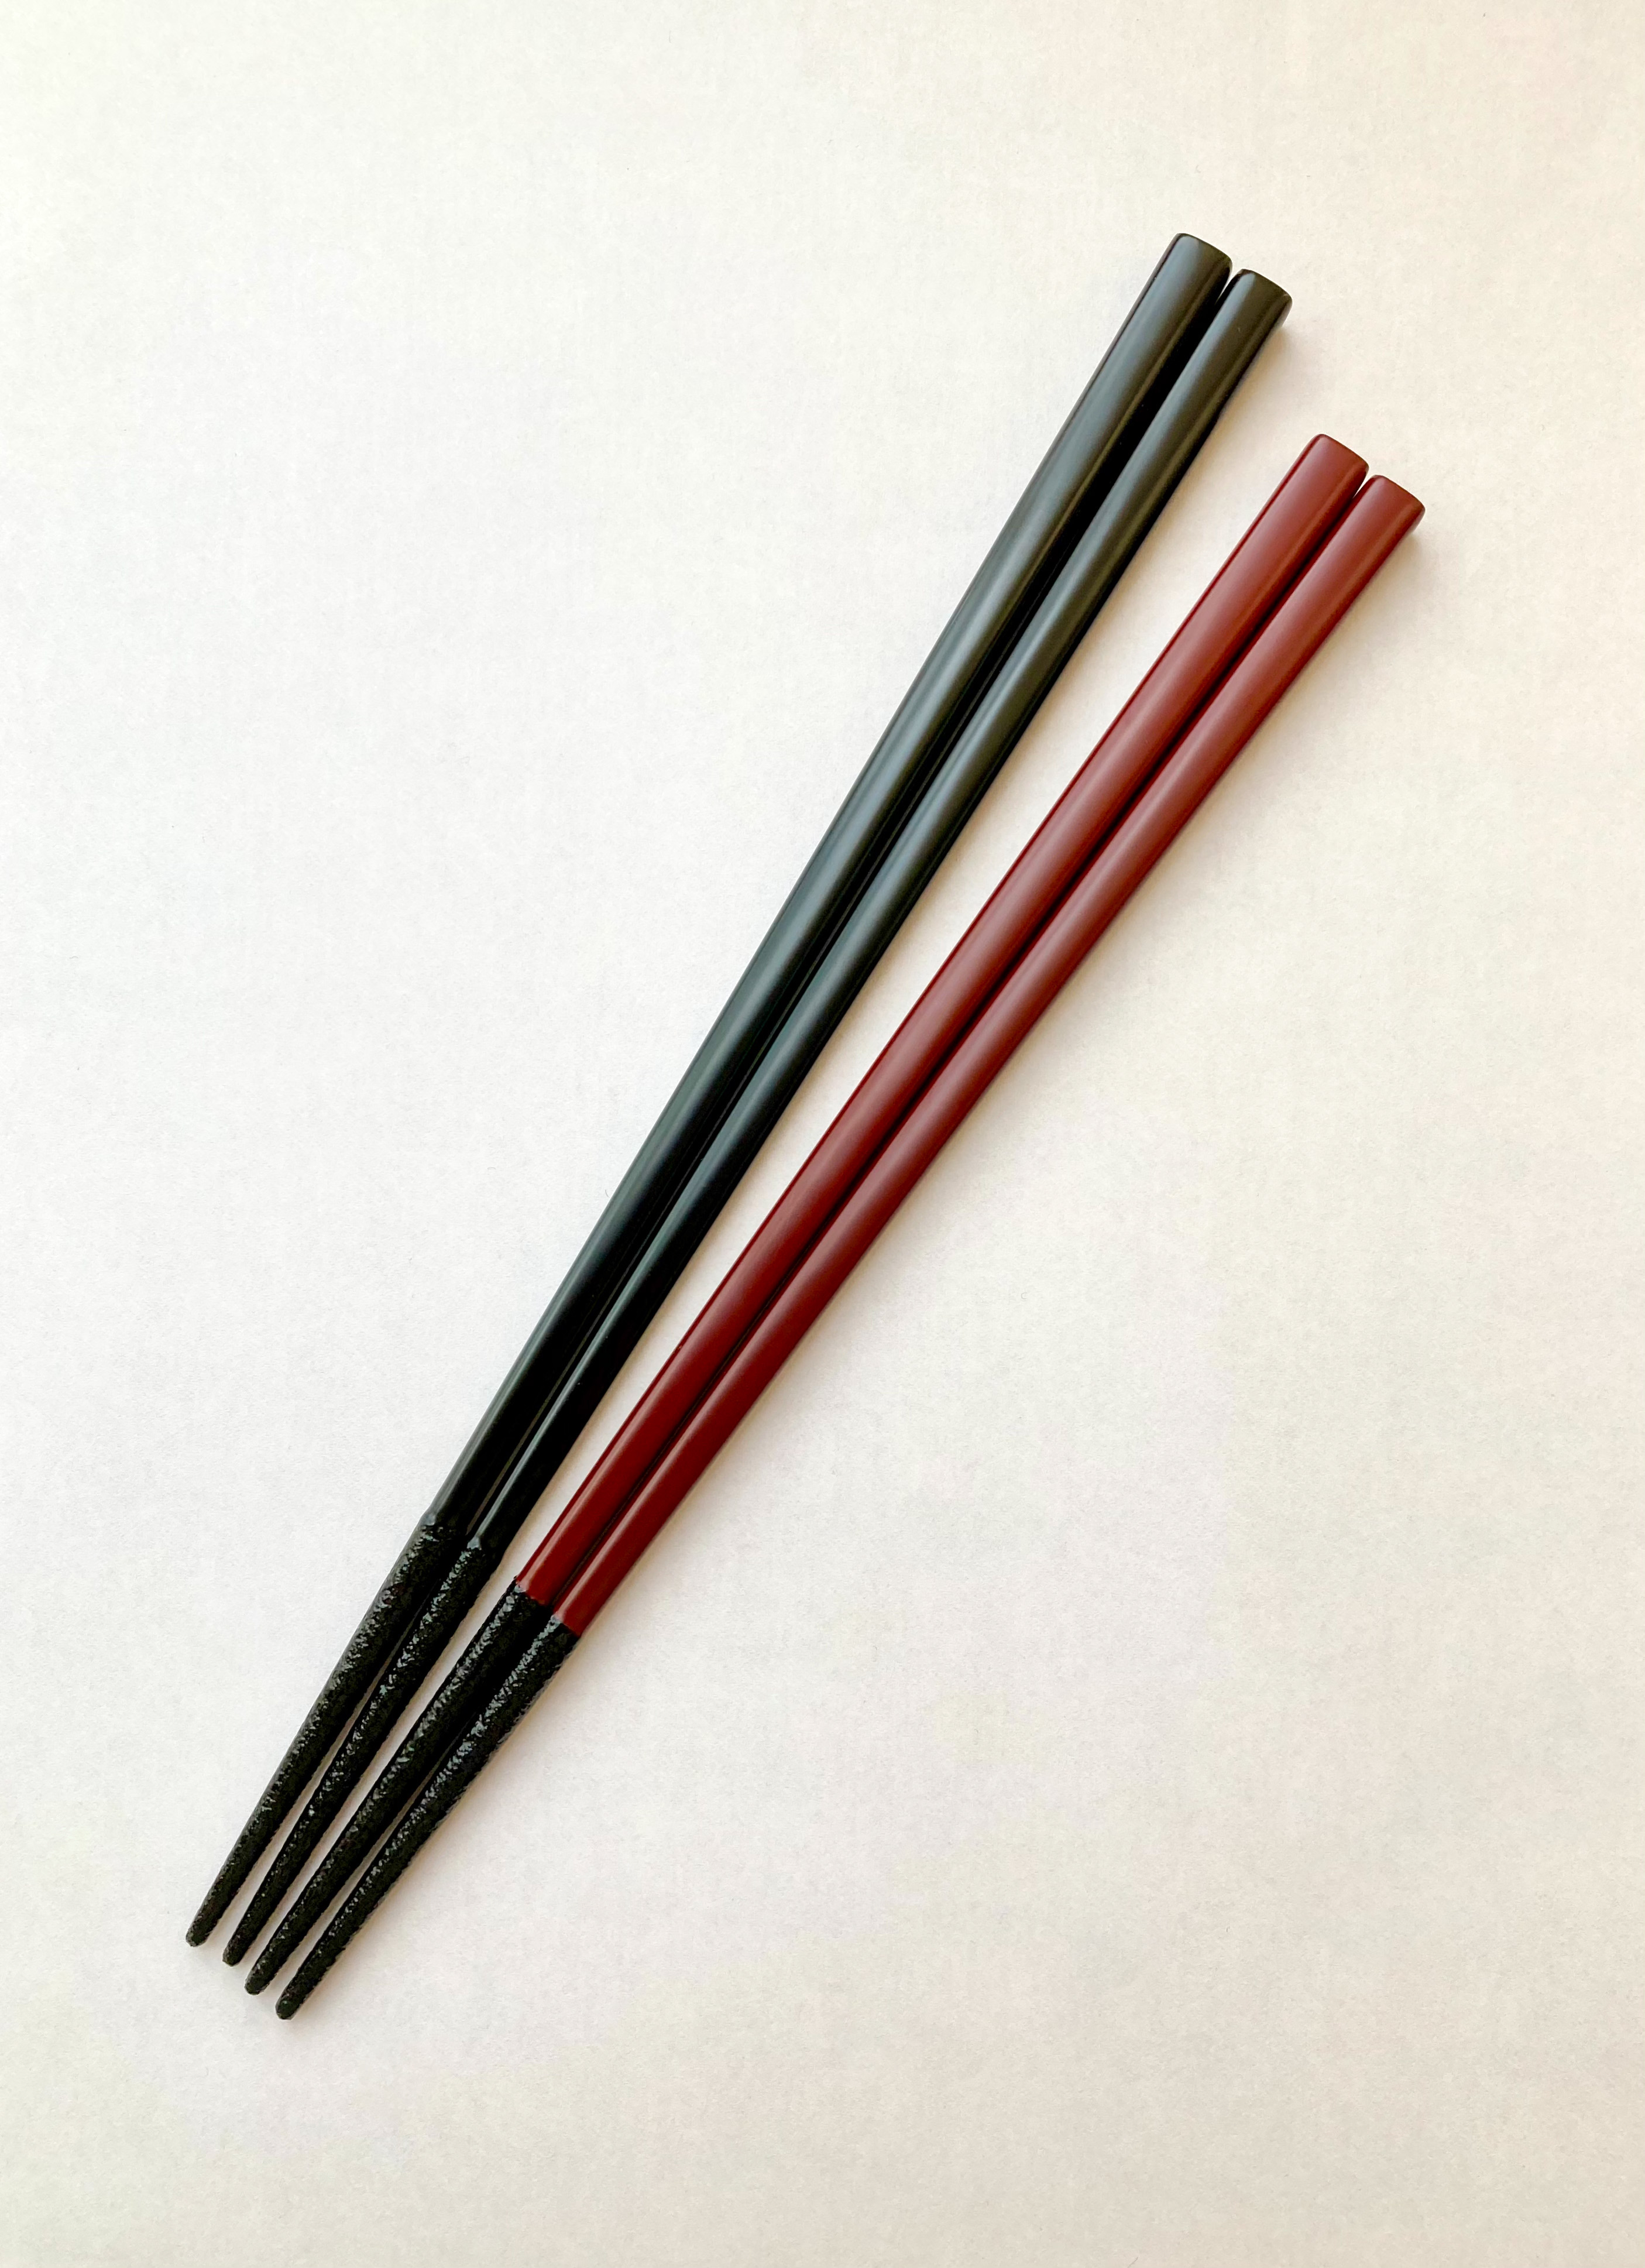 再販 漆の塗り箸 箸先すべりどめ 黒 乾漆粉 Iichi ハンドメイド クラフト作品 手仕事品の通販